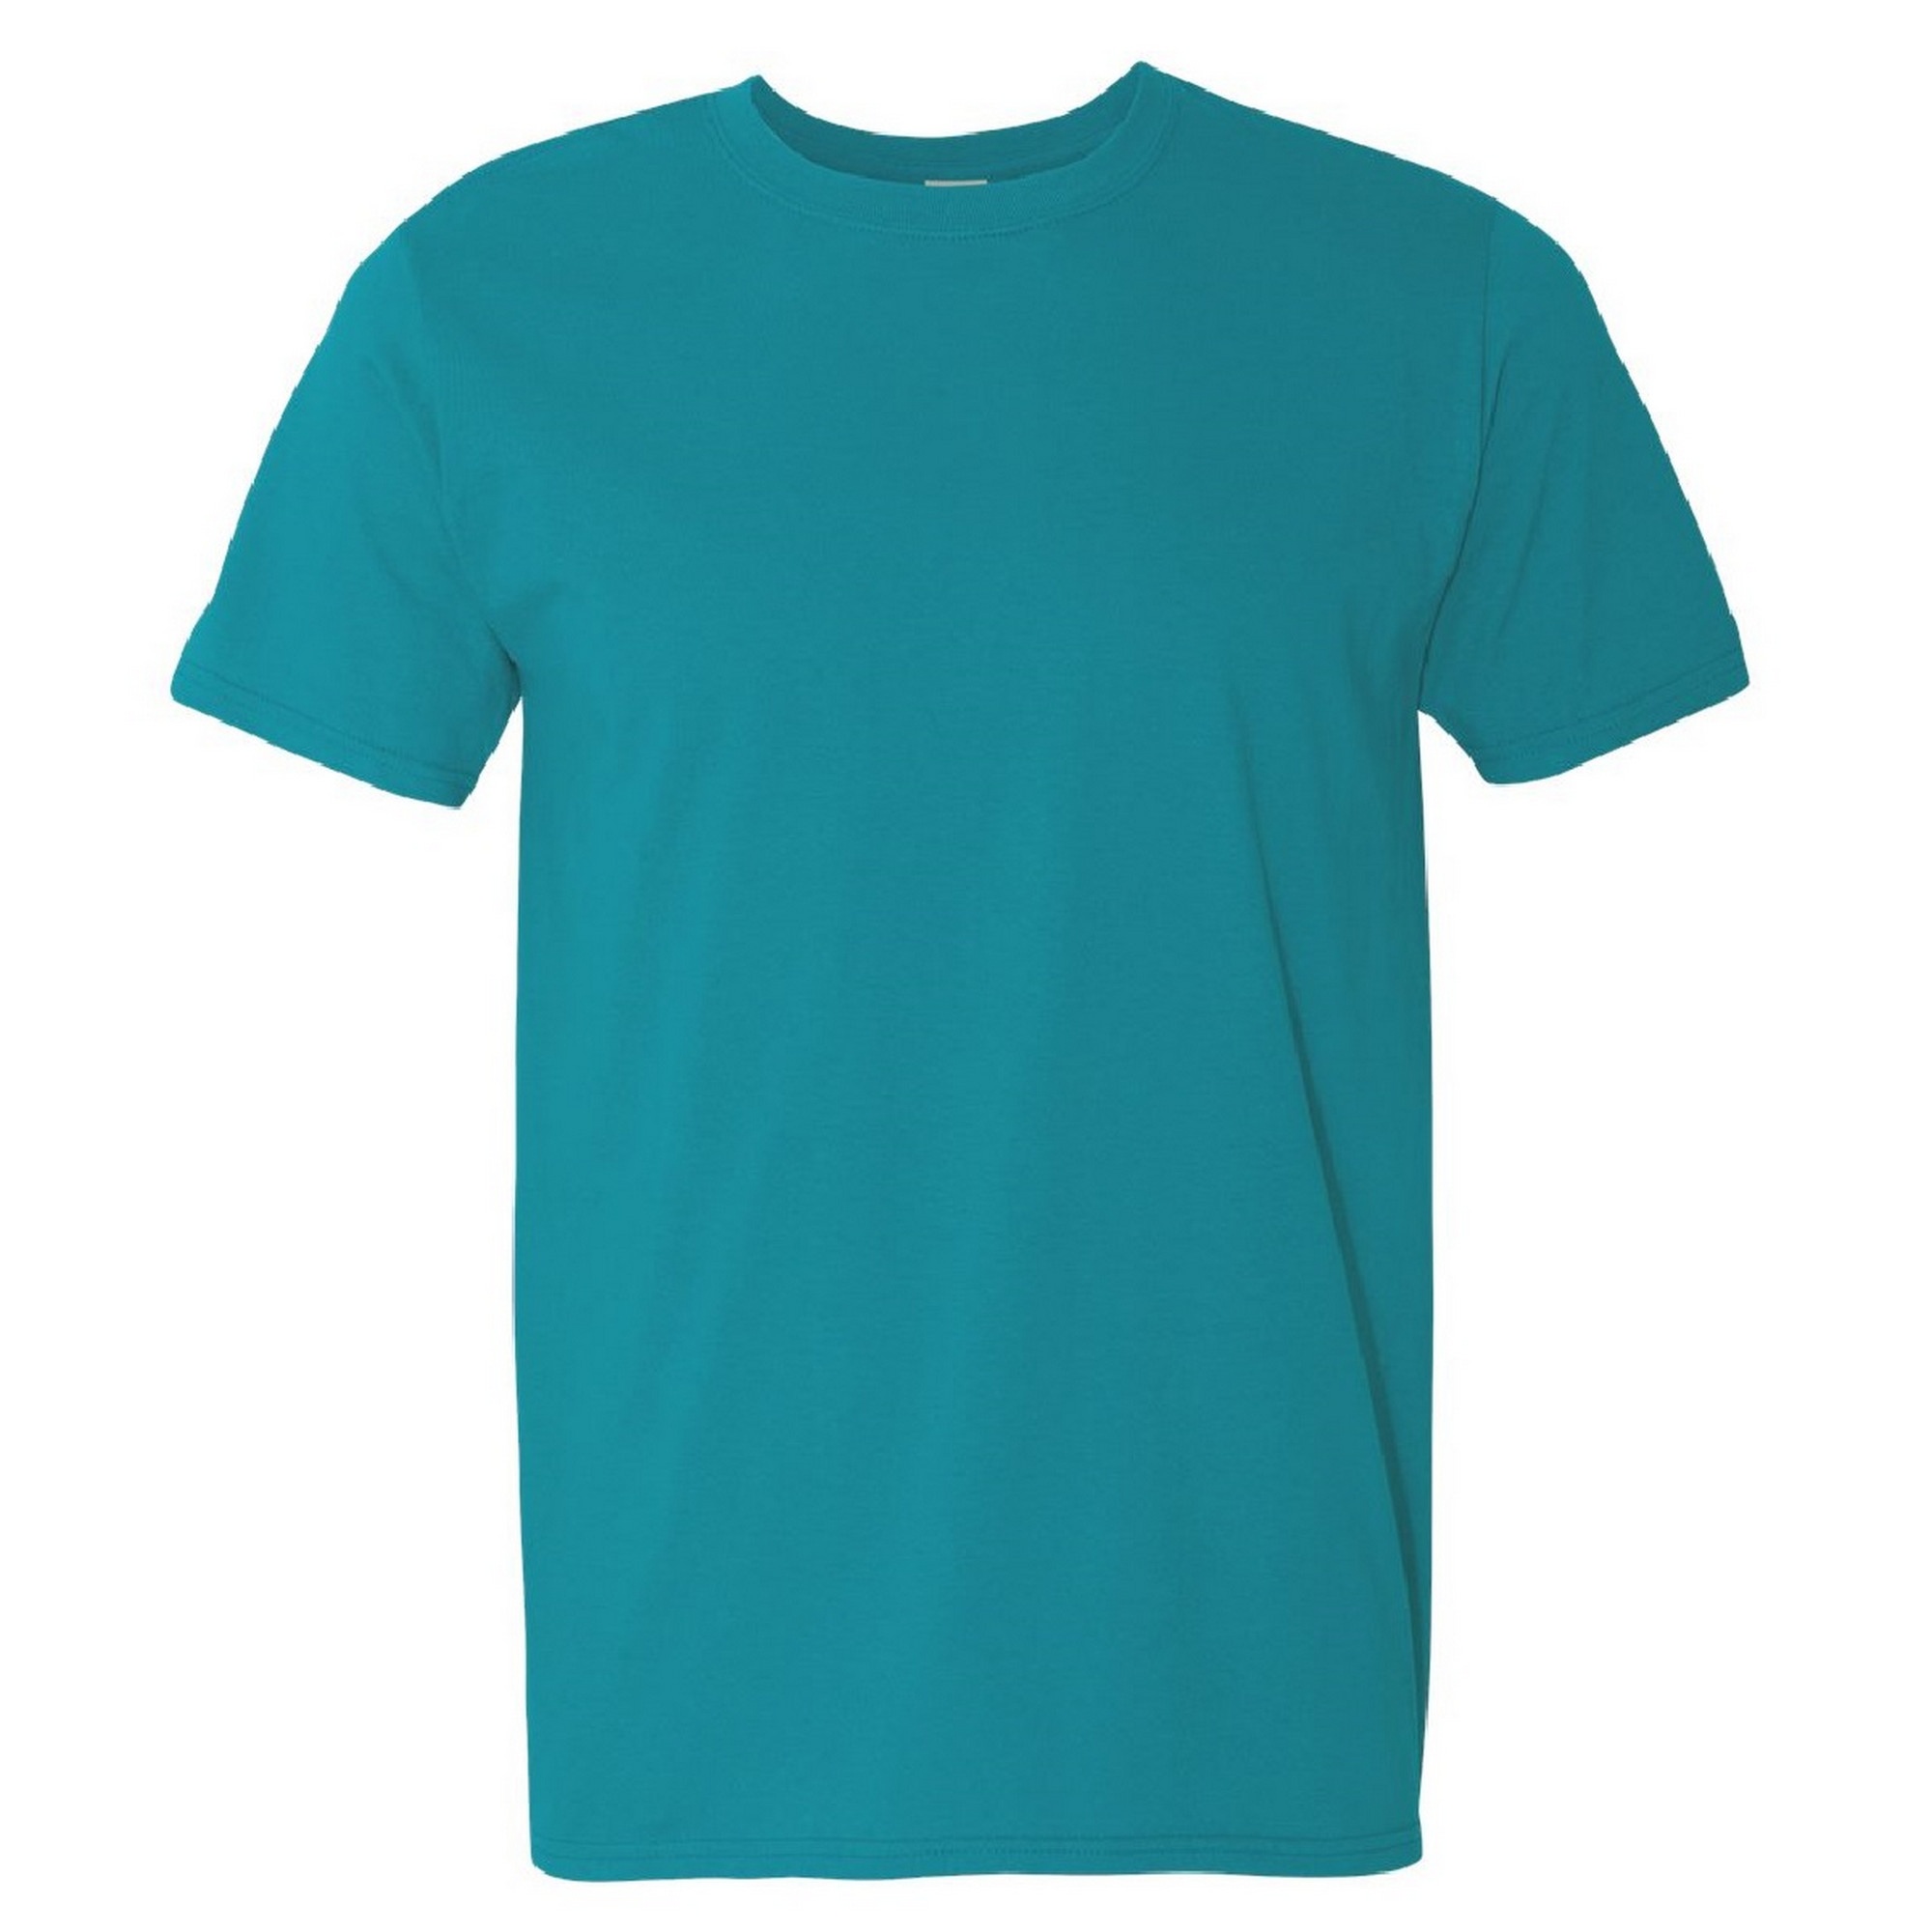 T-shirt Suave Básica Gordo Gildan